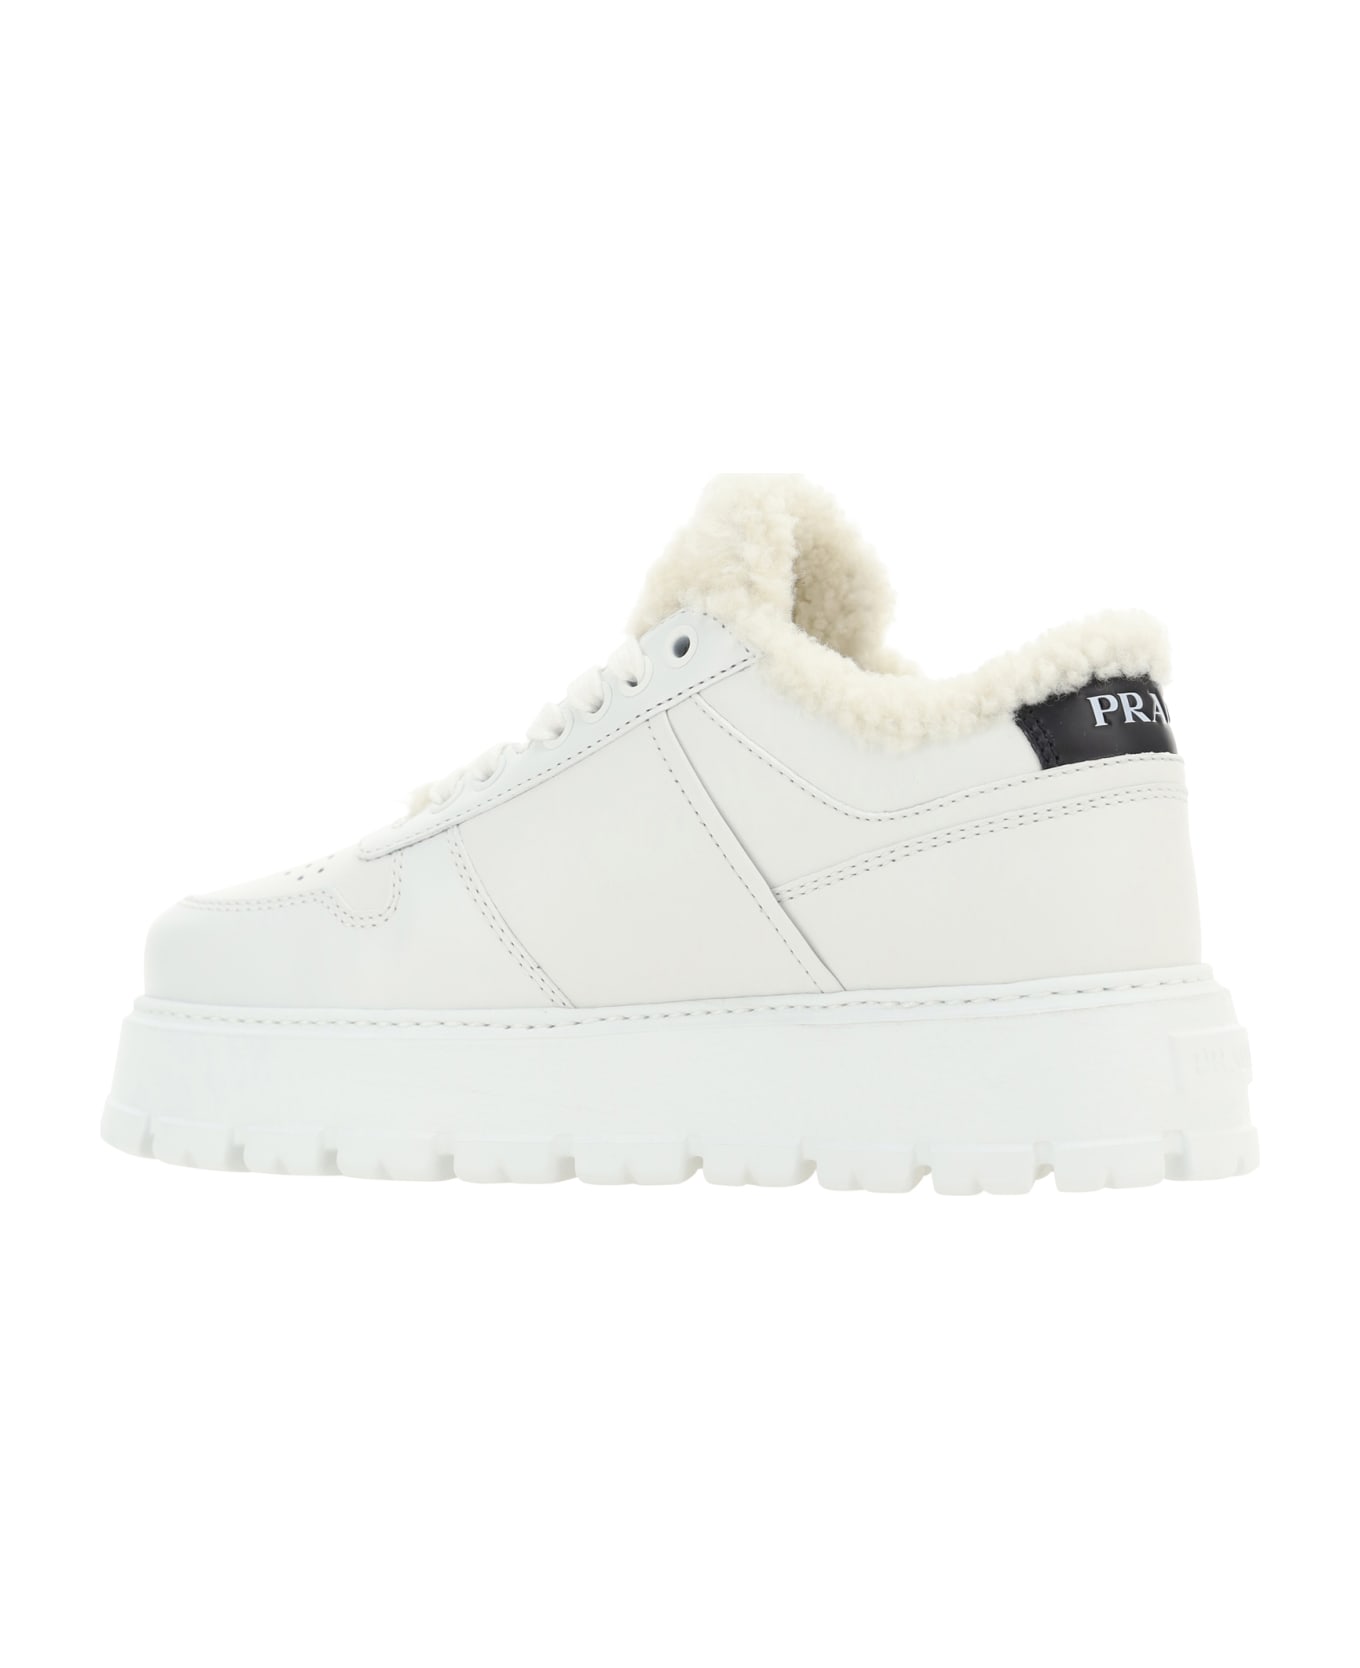 Prada Winter Sneakers - Bianco スニーカー